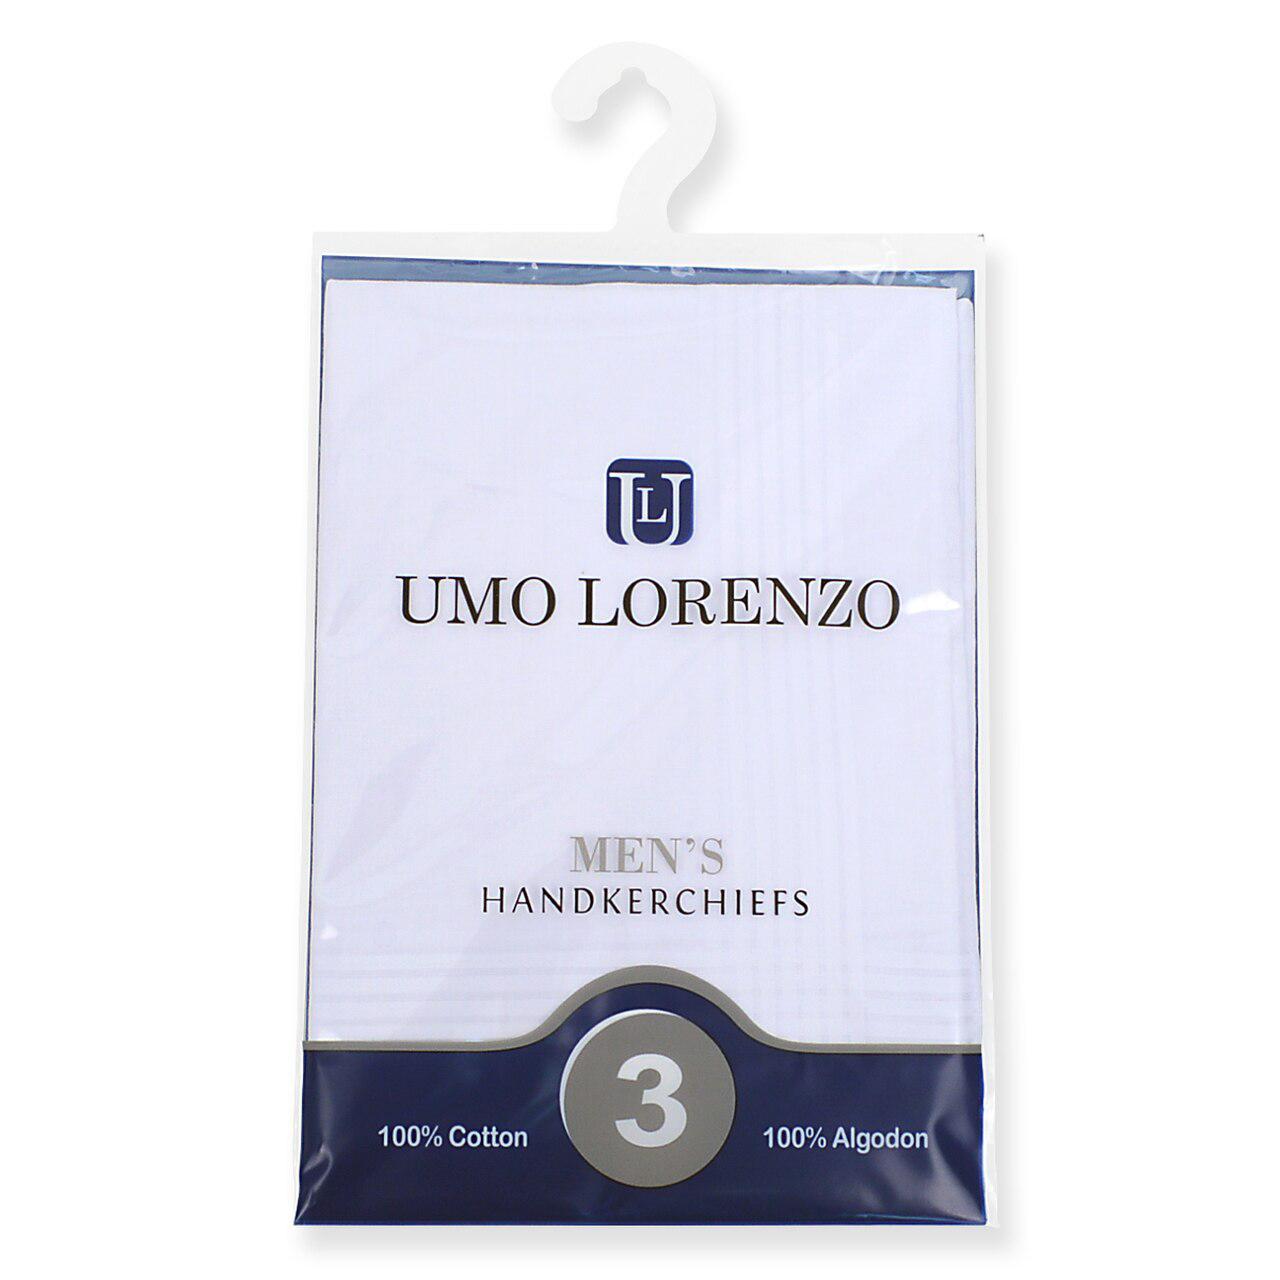  Umo Lorenzo 3pk Handkerchiefs - White